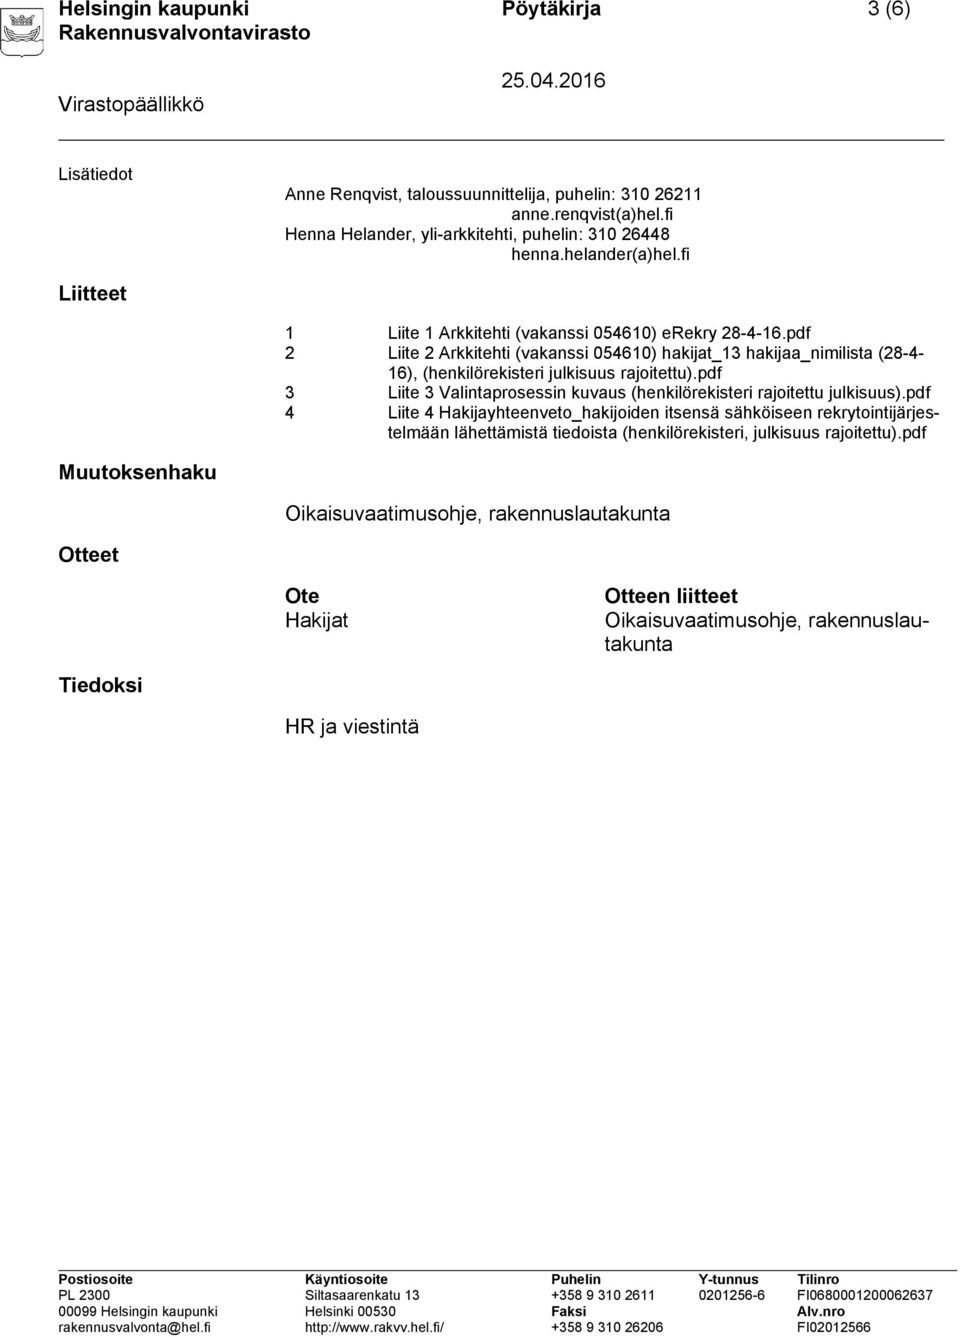 pdf 2 Liite 2 Arkkitehti (vakanssi 054610) hakijat_13 hakijaa_nimilista (28-4- 16), (henkilörekisteri julkisuus rajoitettu).